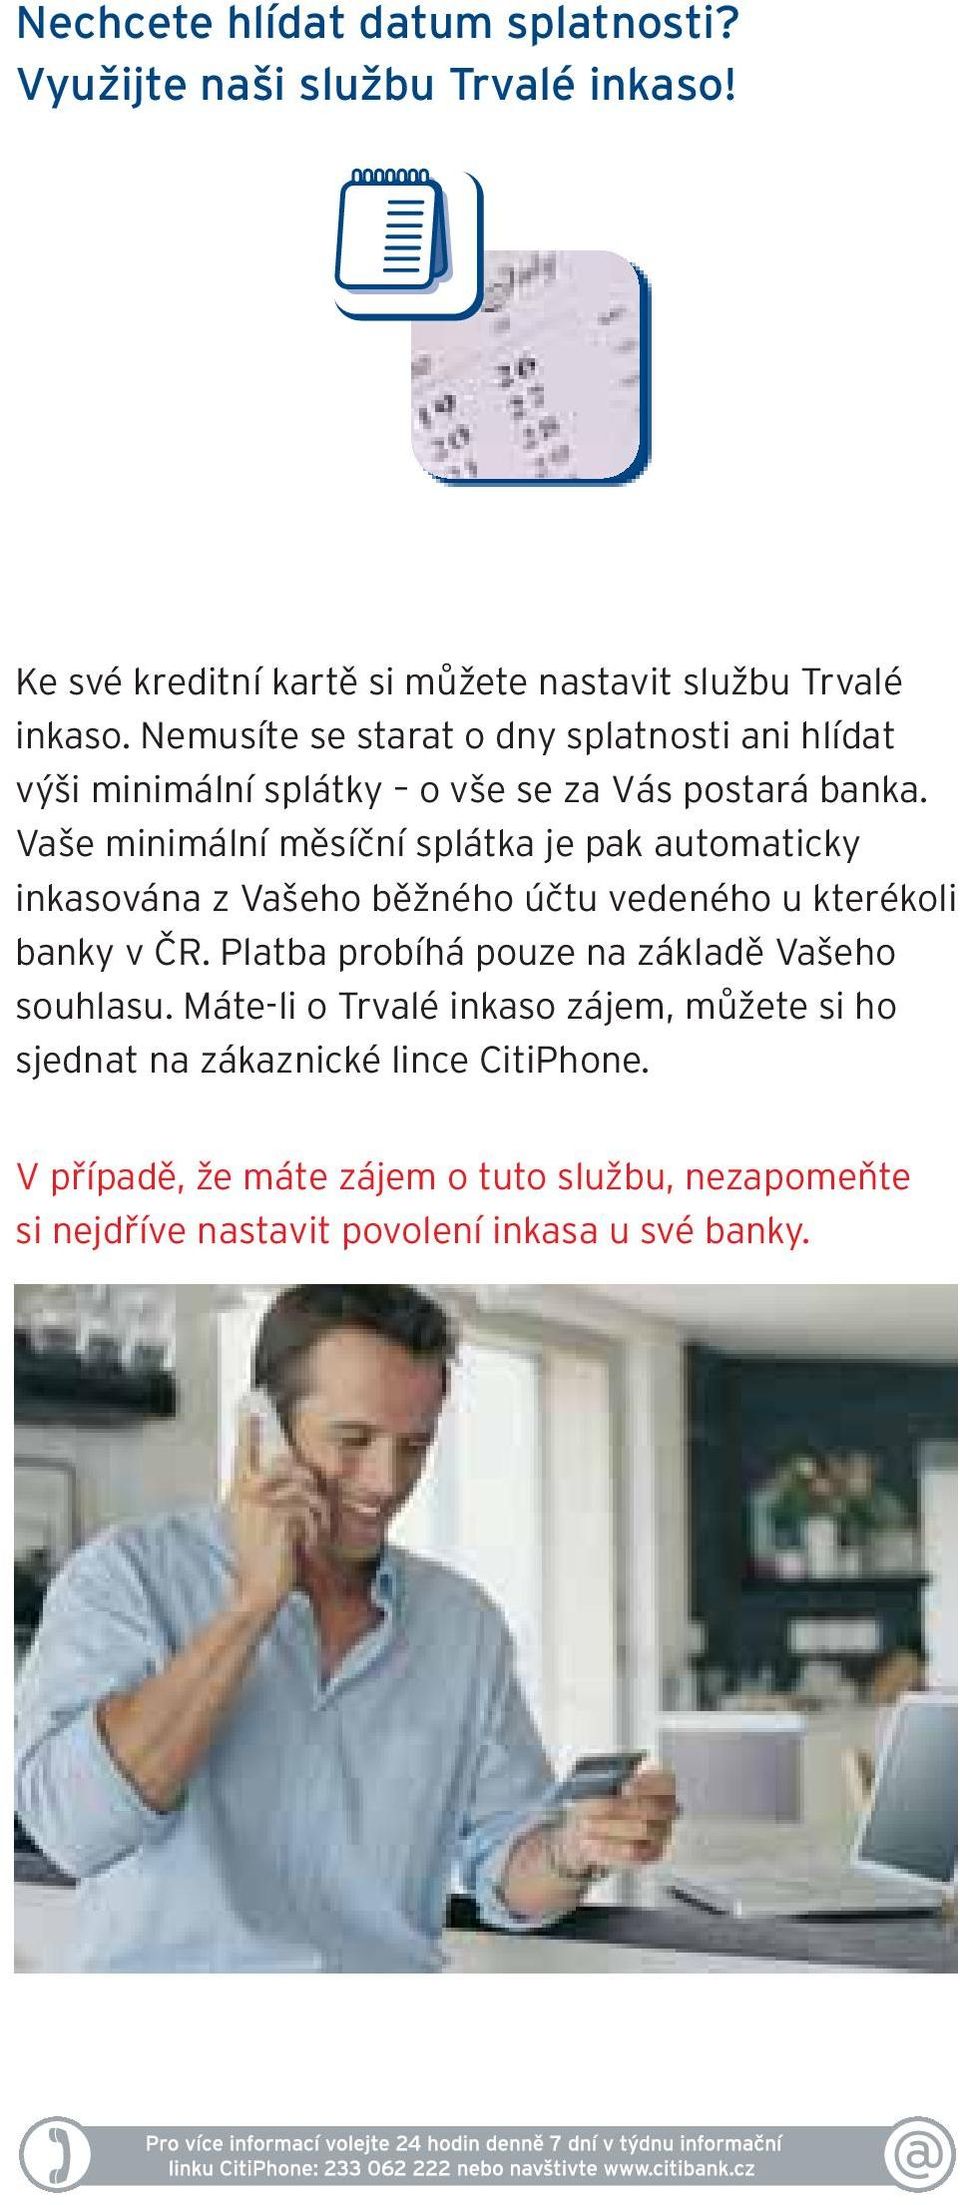 Vaše minimální měsíční splátka je pak automaticky inkasována z Vašeho běžného účtu vedeného u kterékoli banky v ČR.